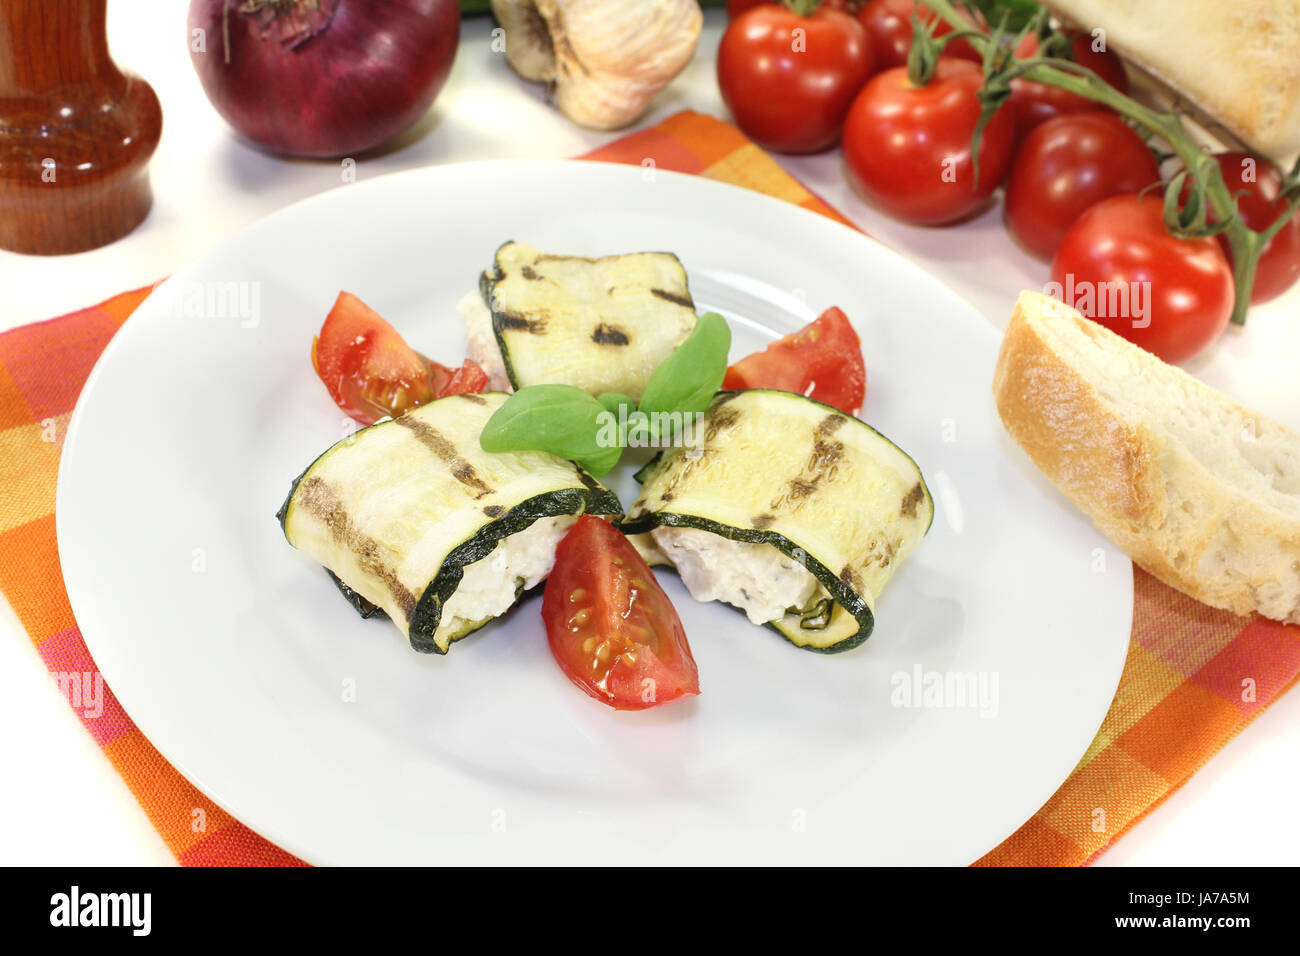 stuffed zucchini rolls Stock Photo